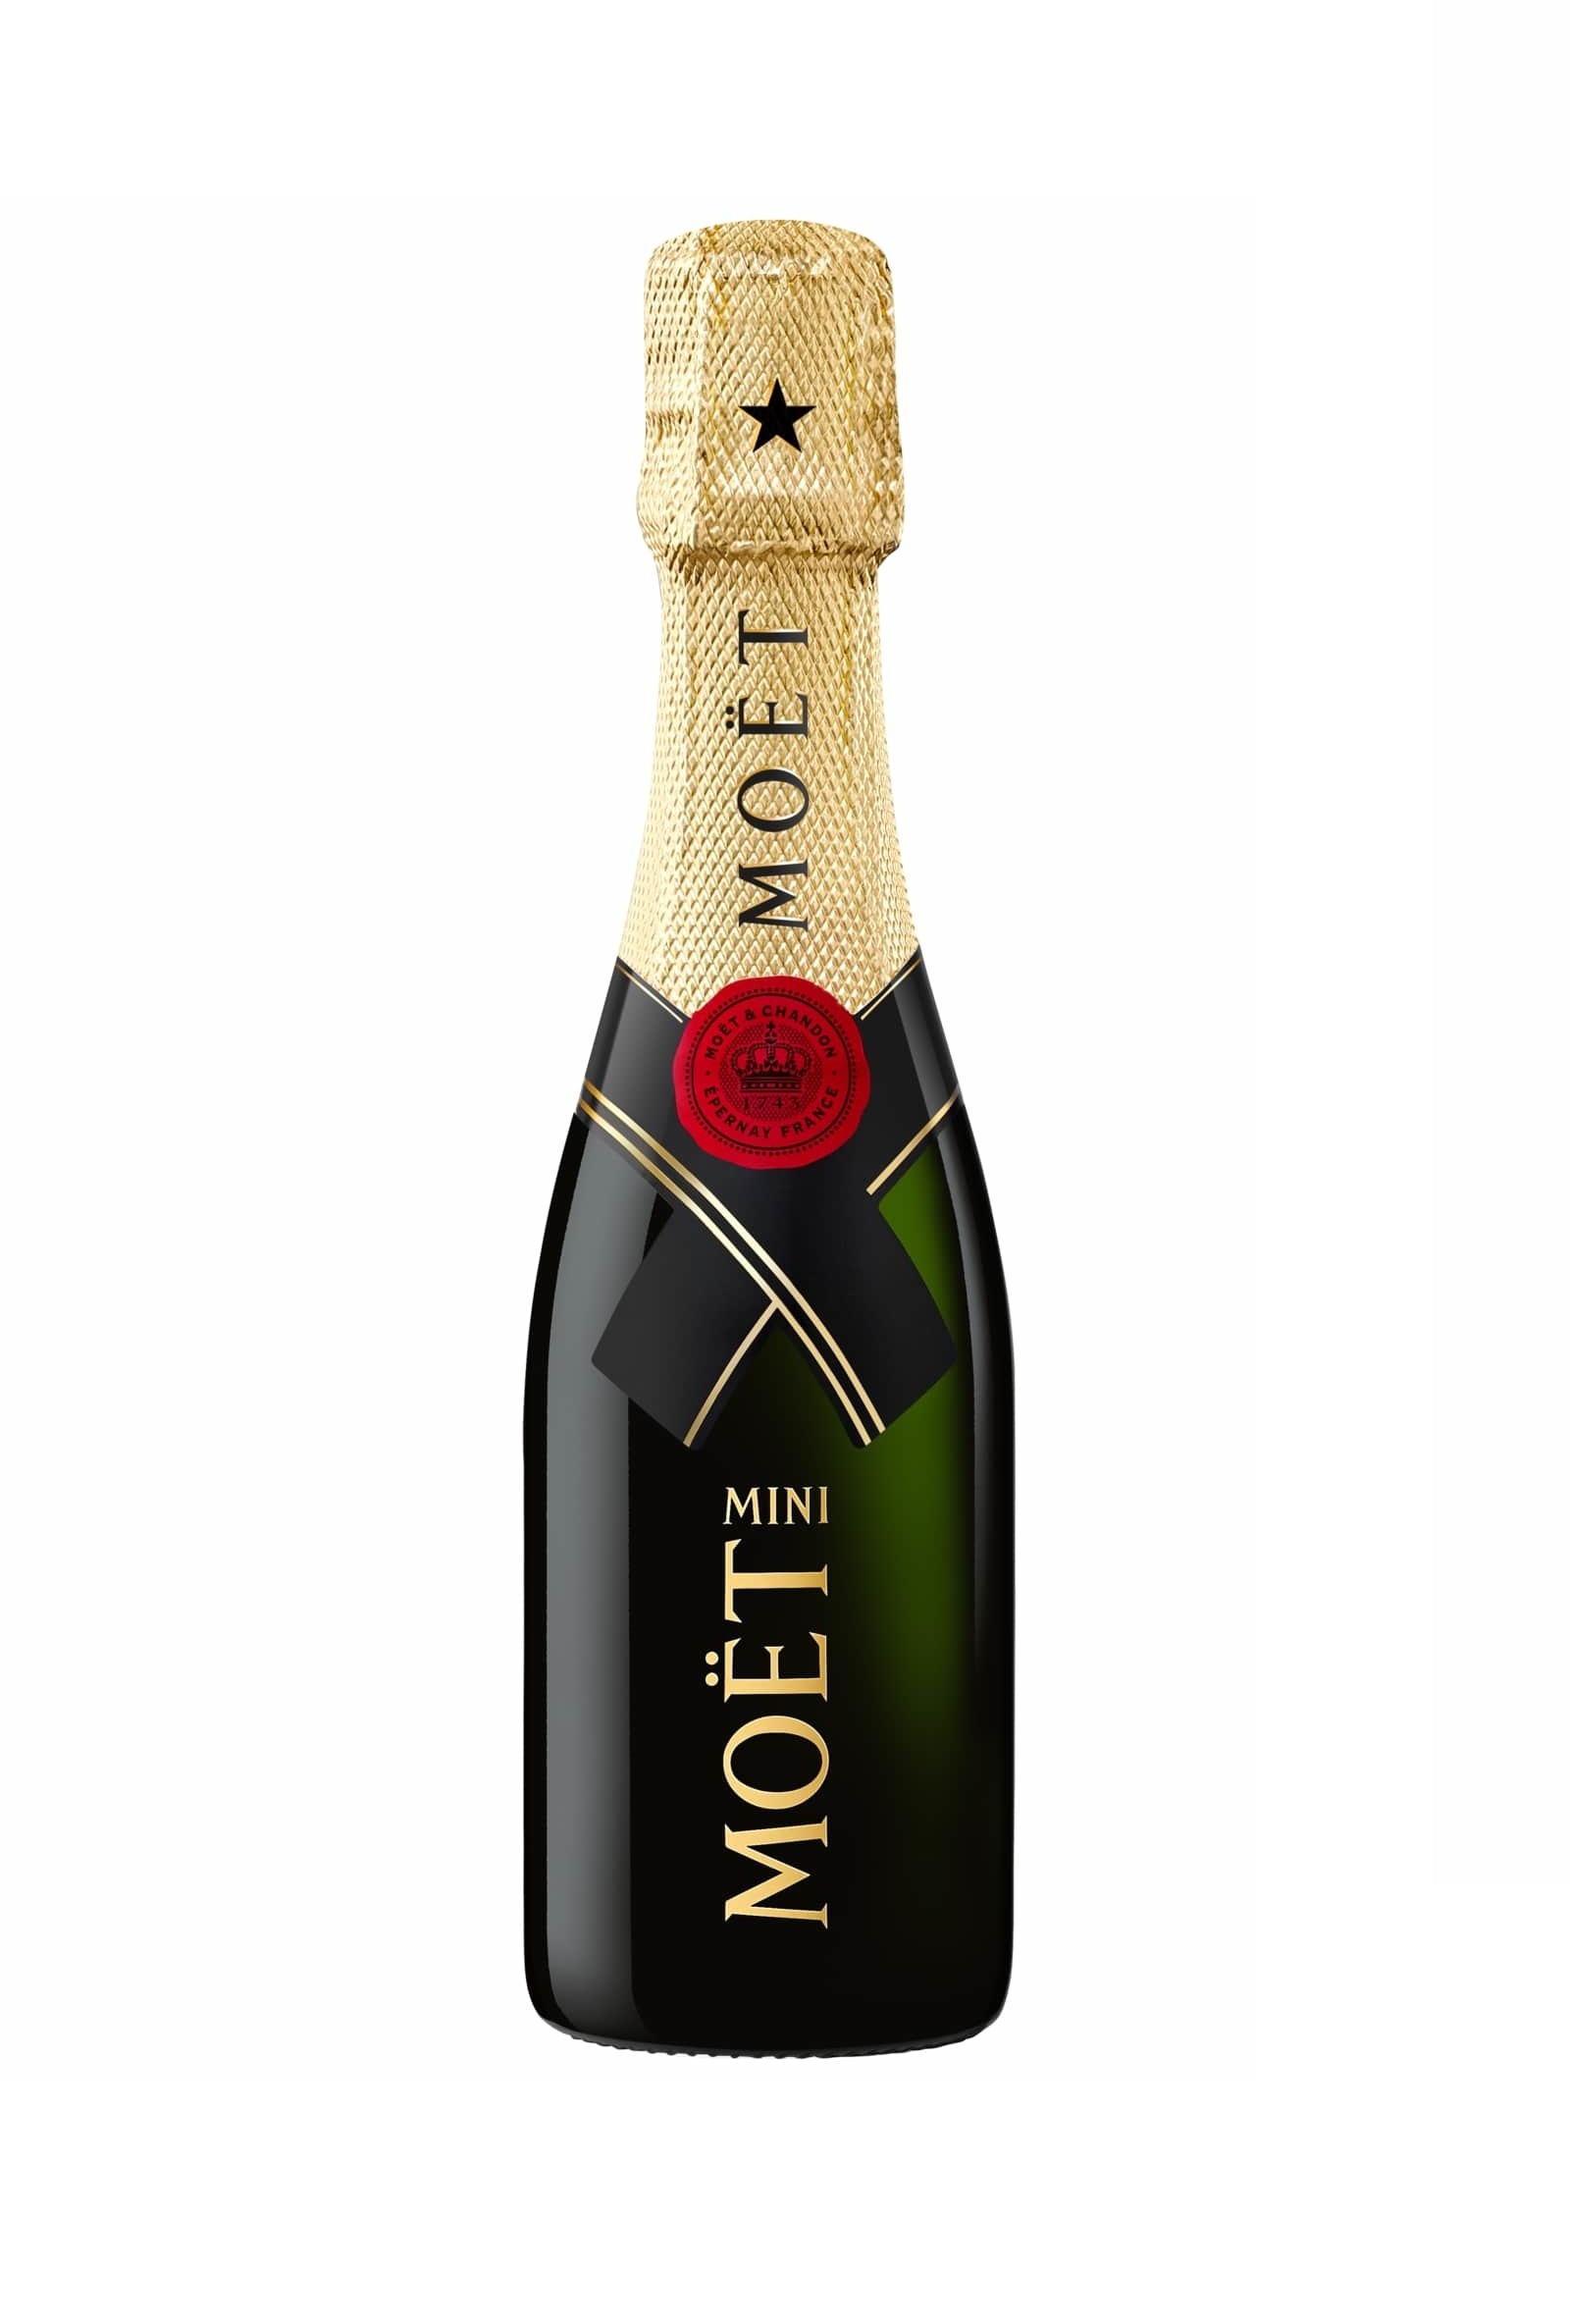 Champagne Moet & Chandon MINI 12% 20 cl